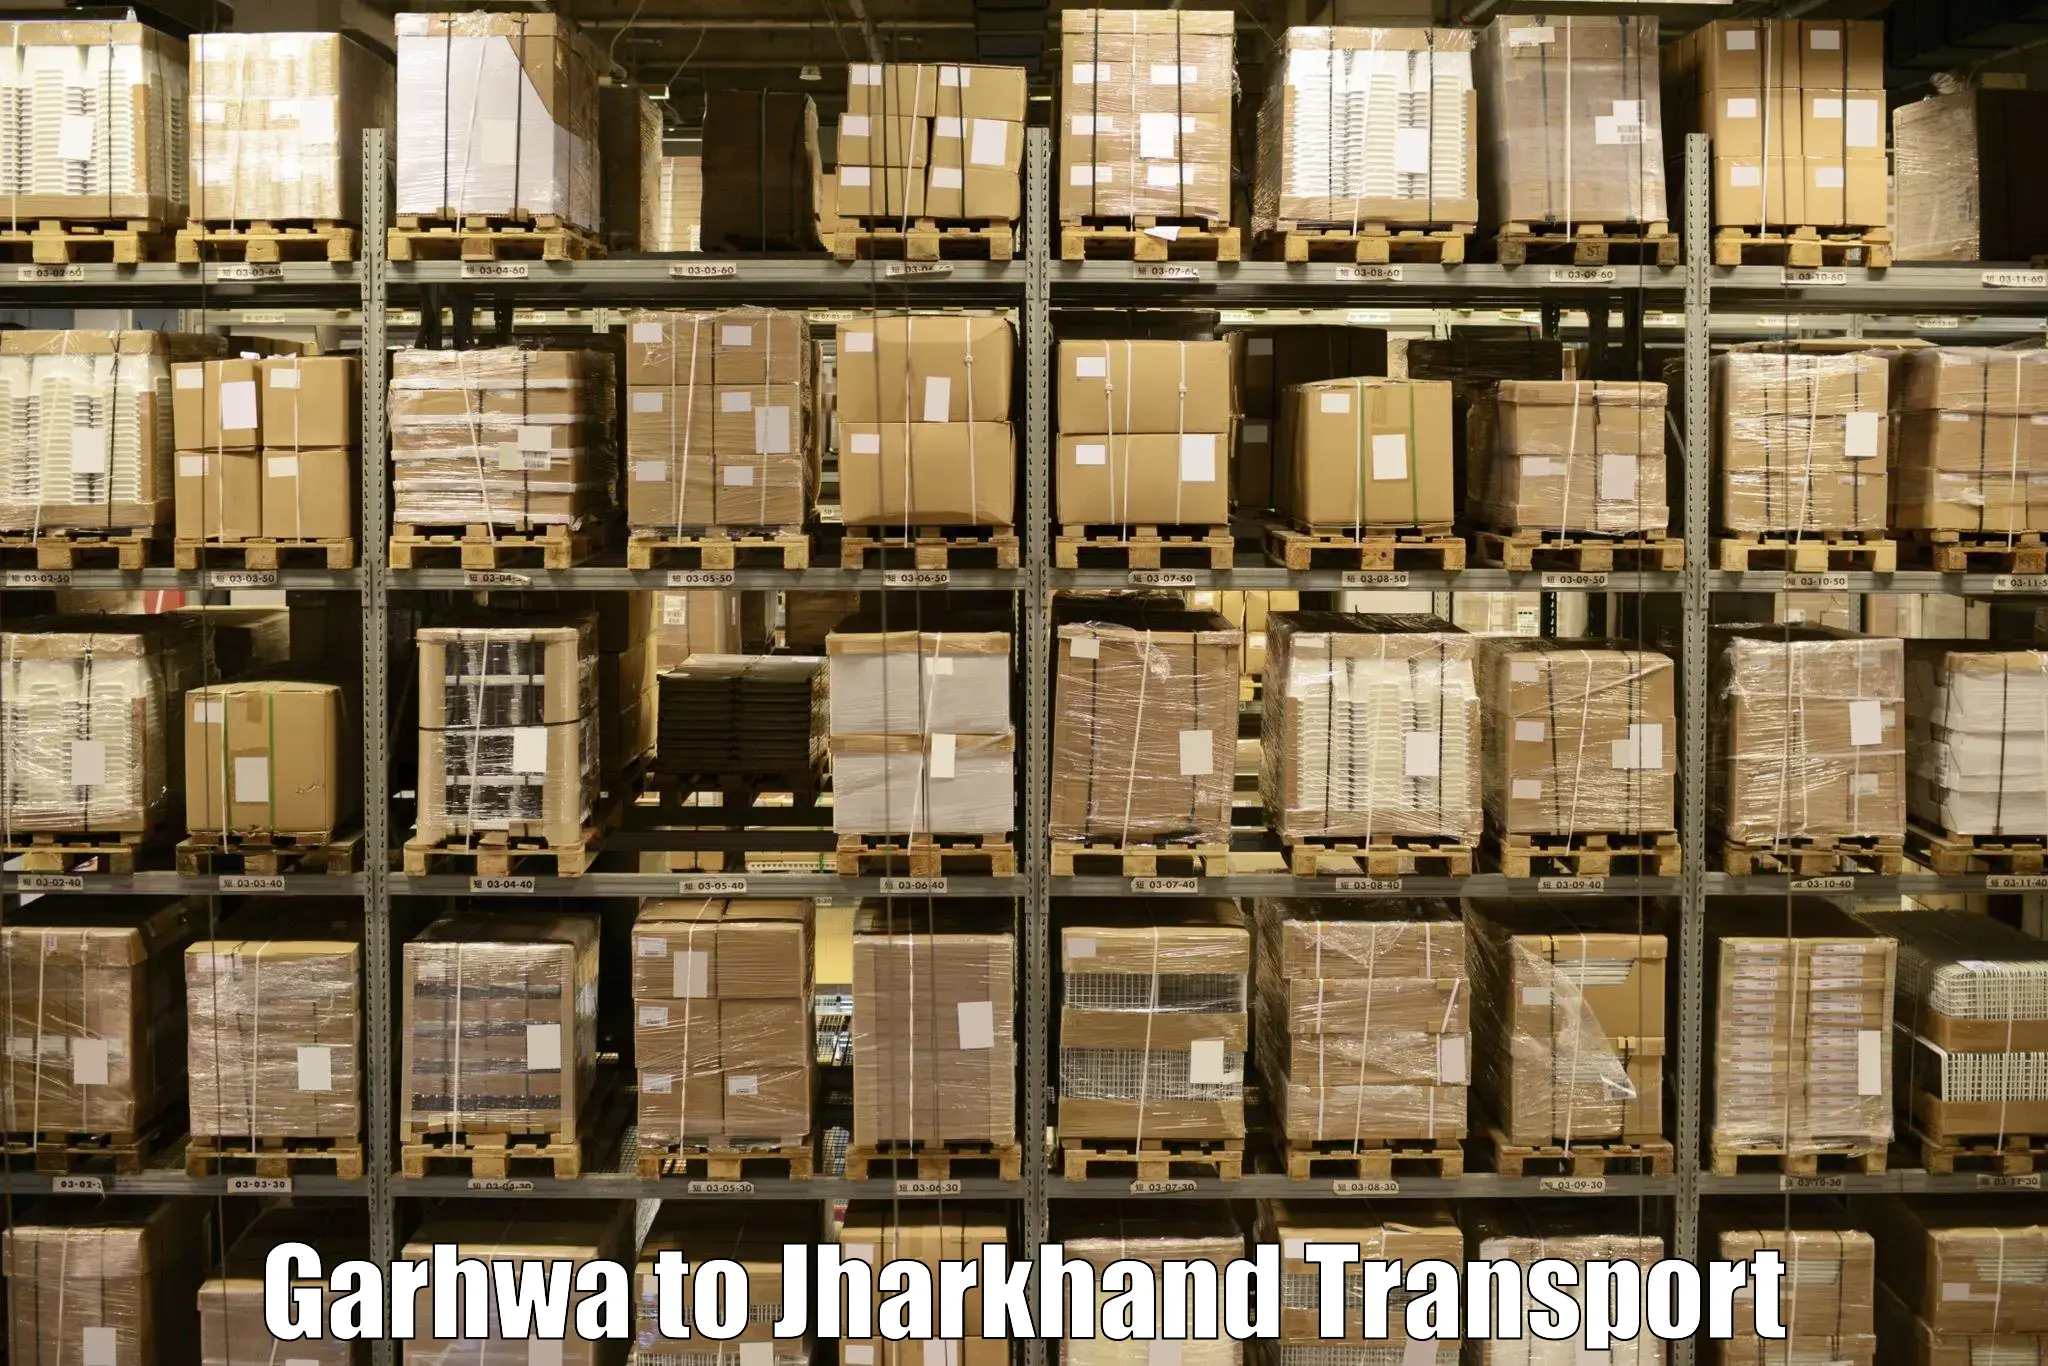 Commercial transport service Garhwa to Govindpur